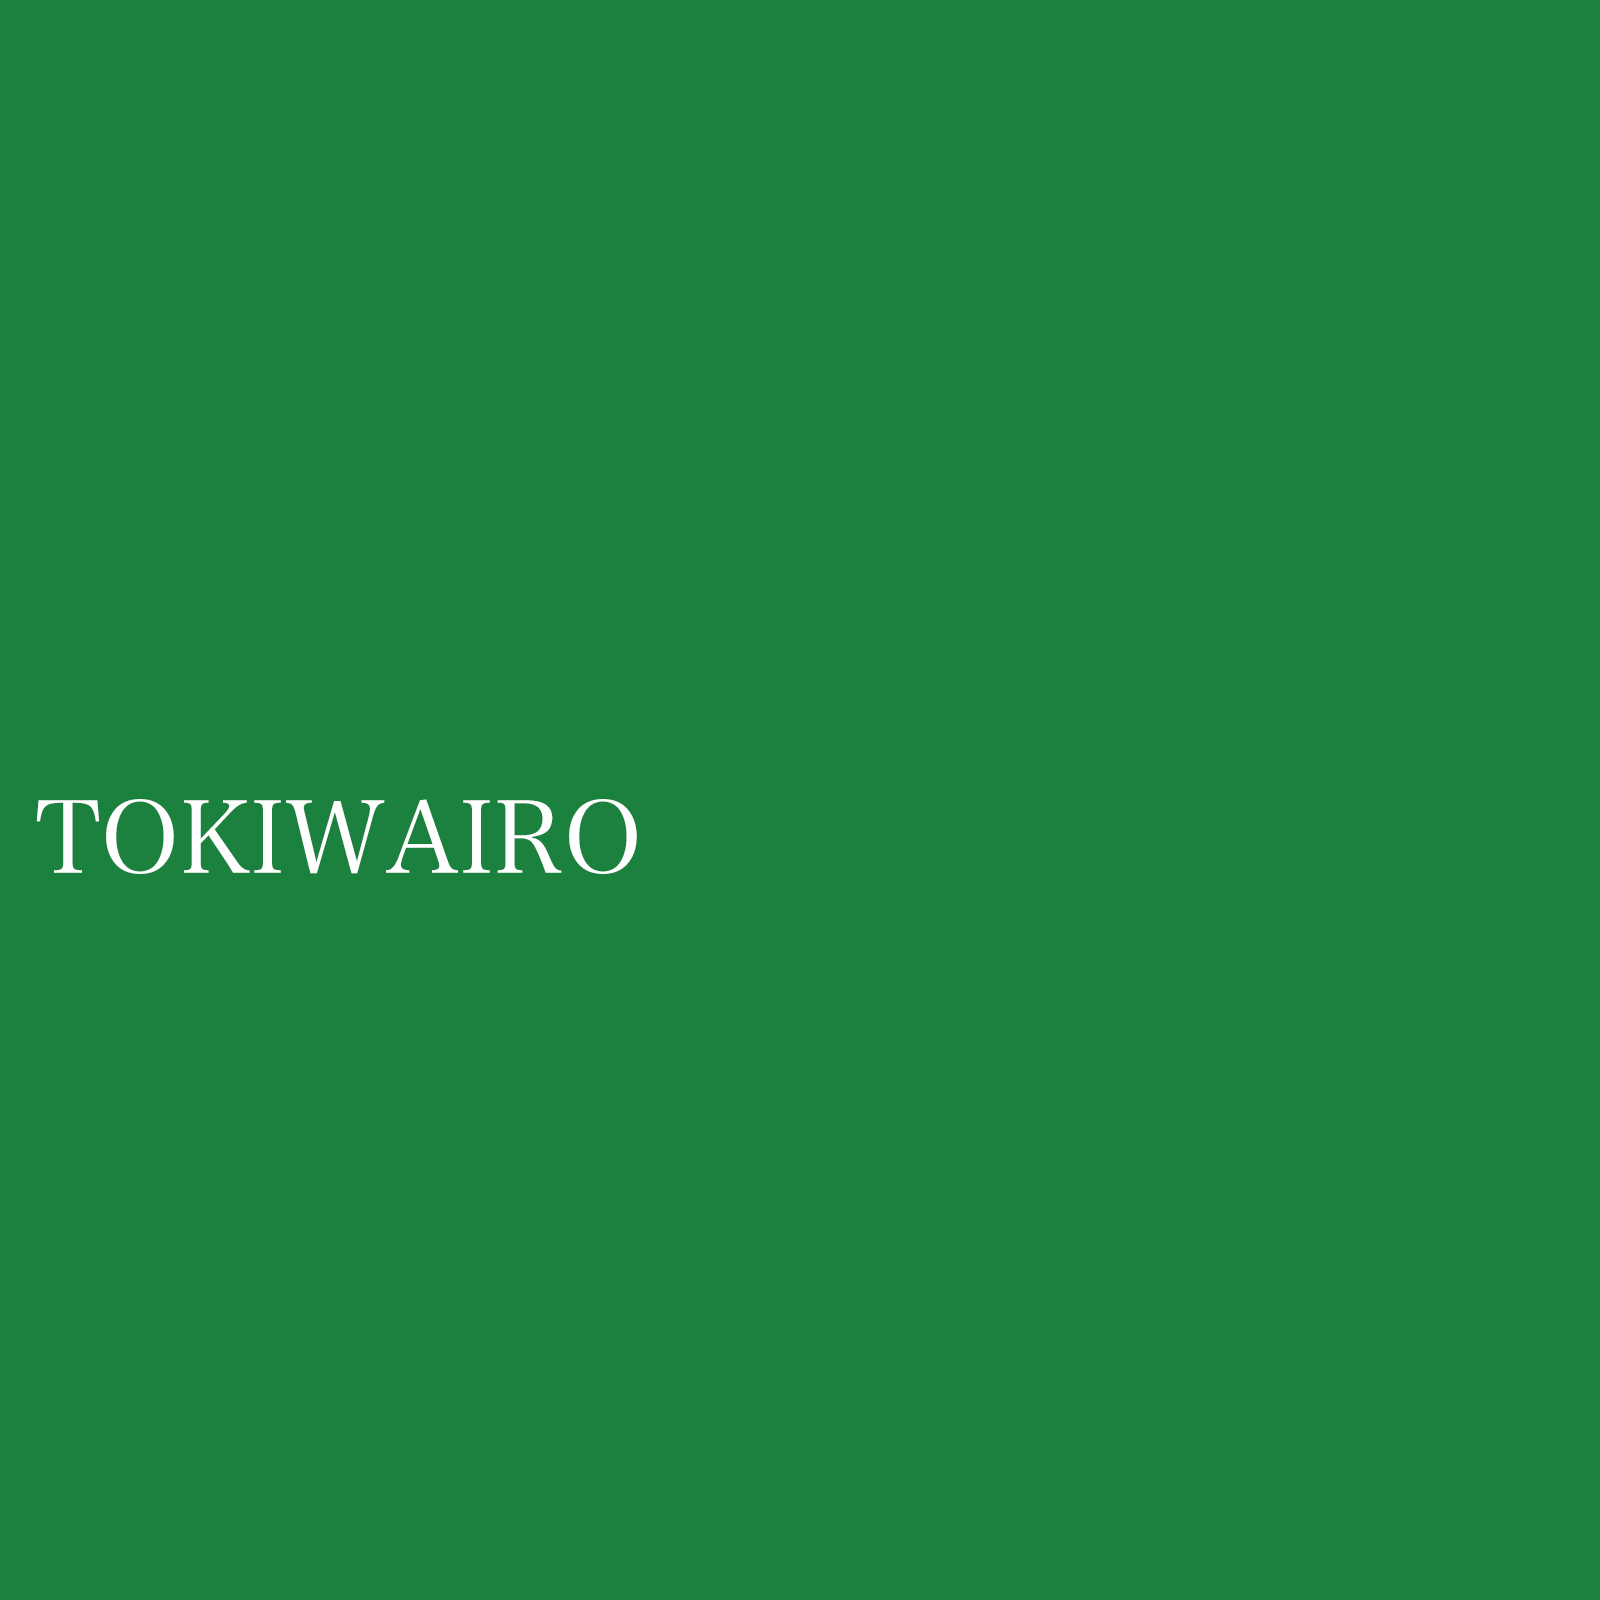 tokiwairo